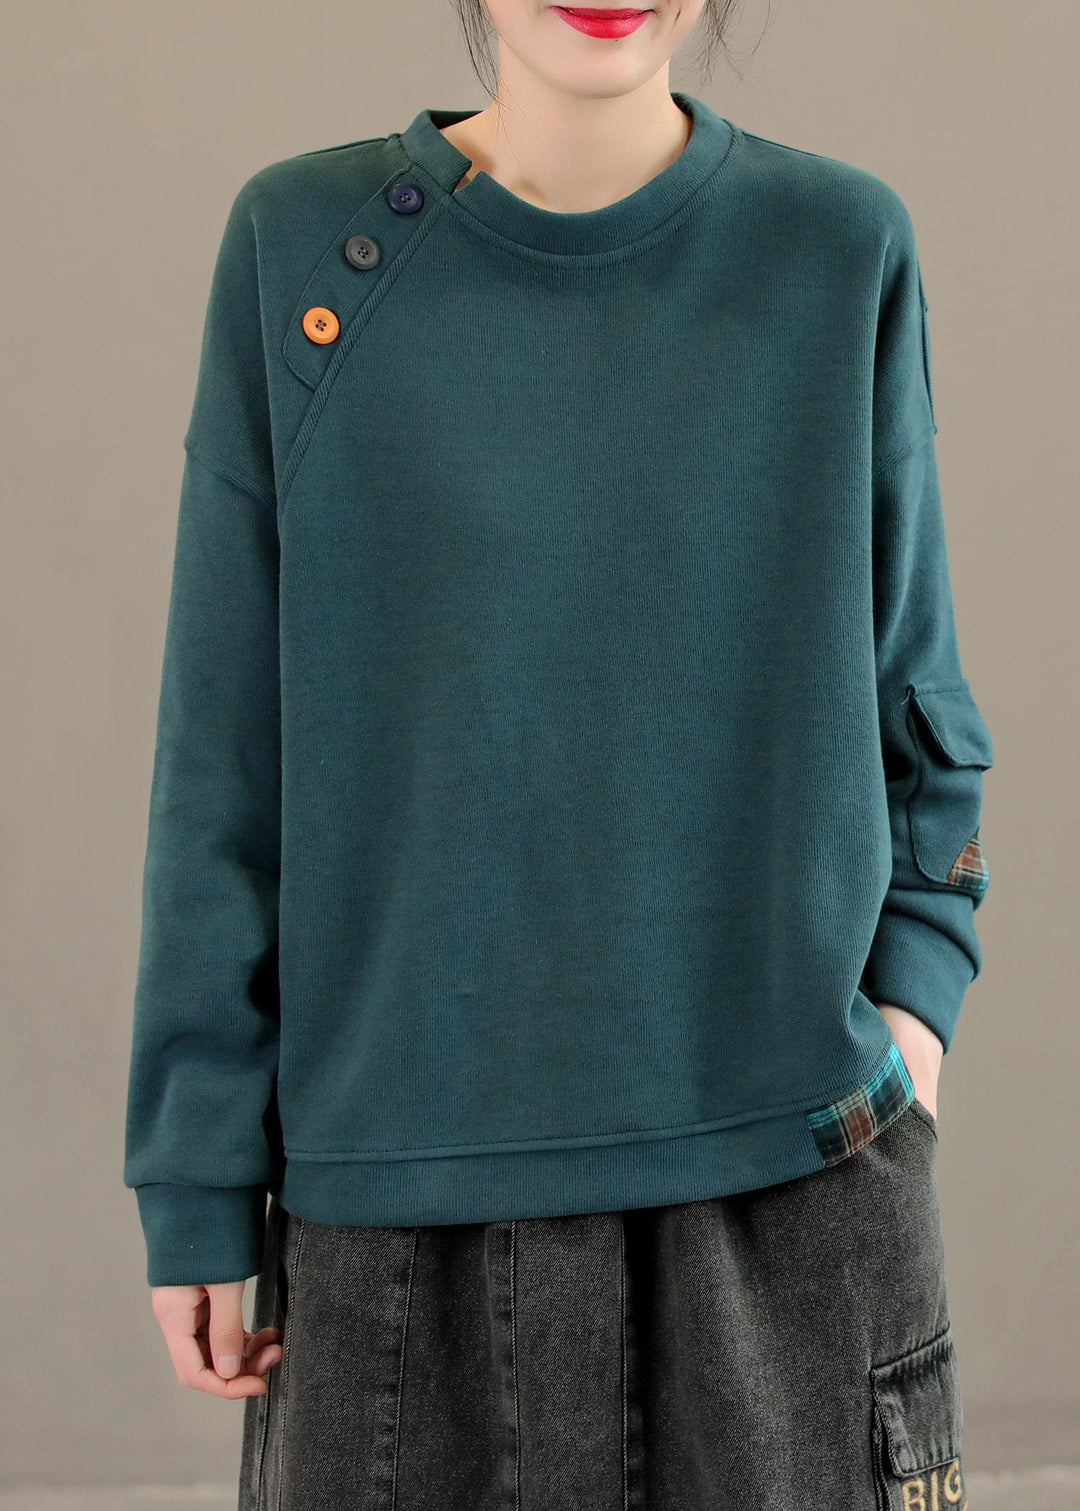 Modern Grass Green O-Neck Pockets Patchwork Button Cotton Sweatshirts Long Sleeve